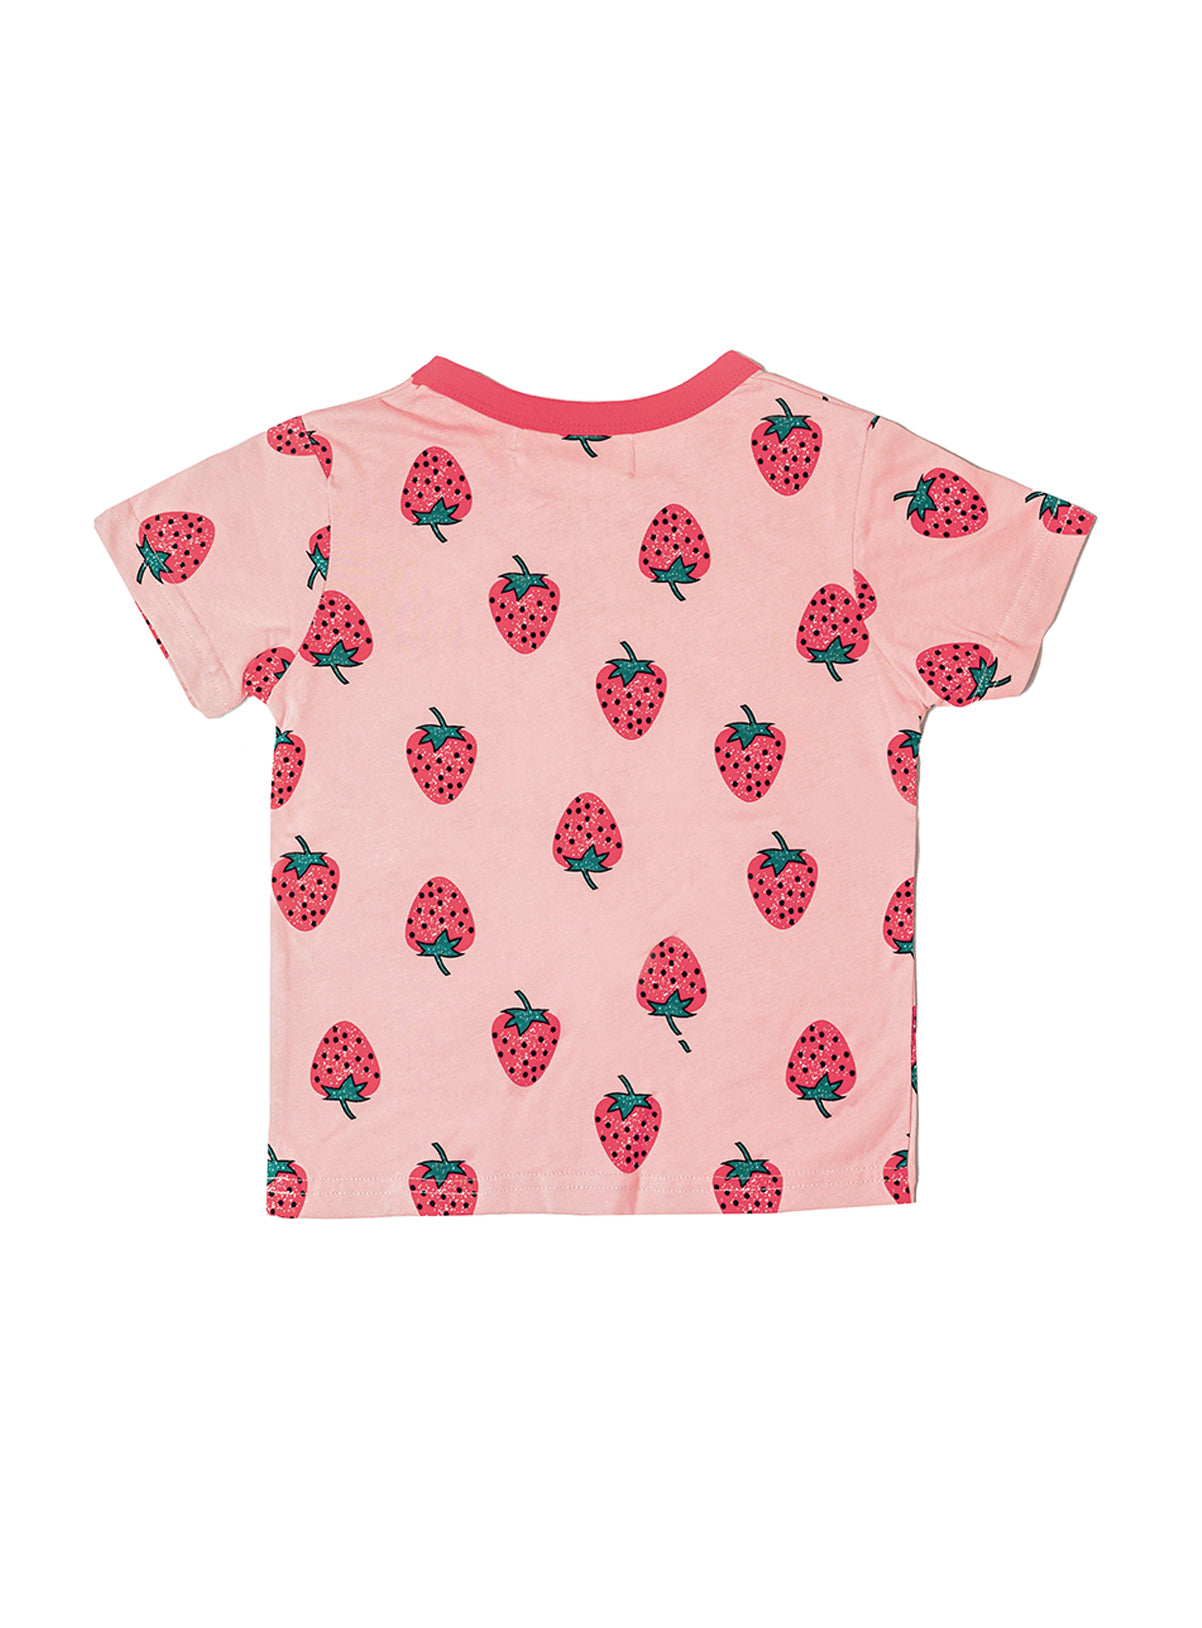 mini strawberries shirt